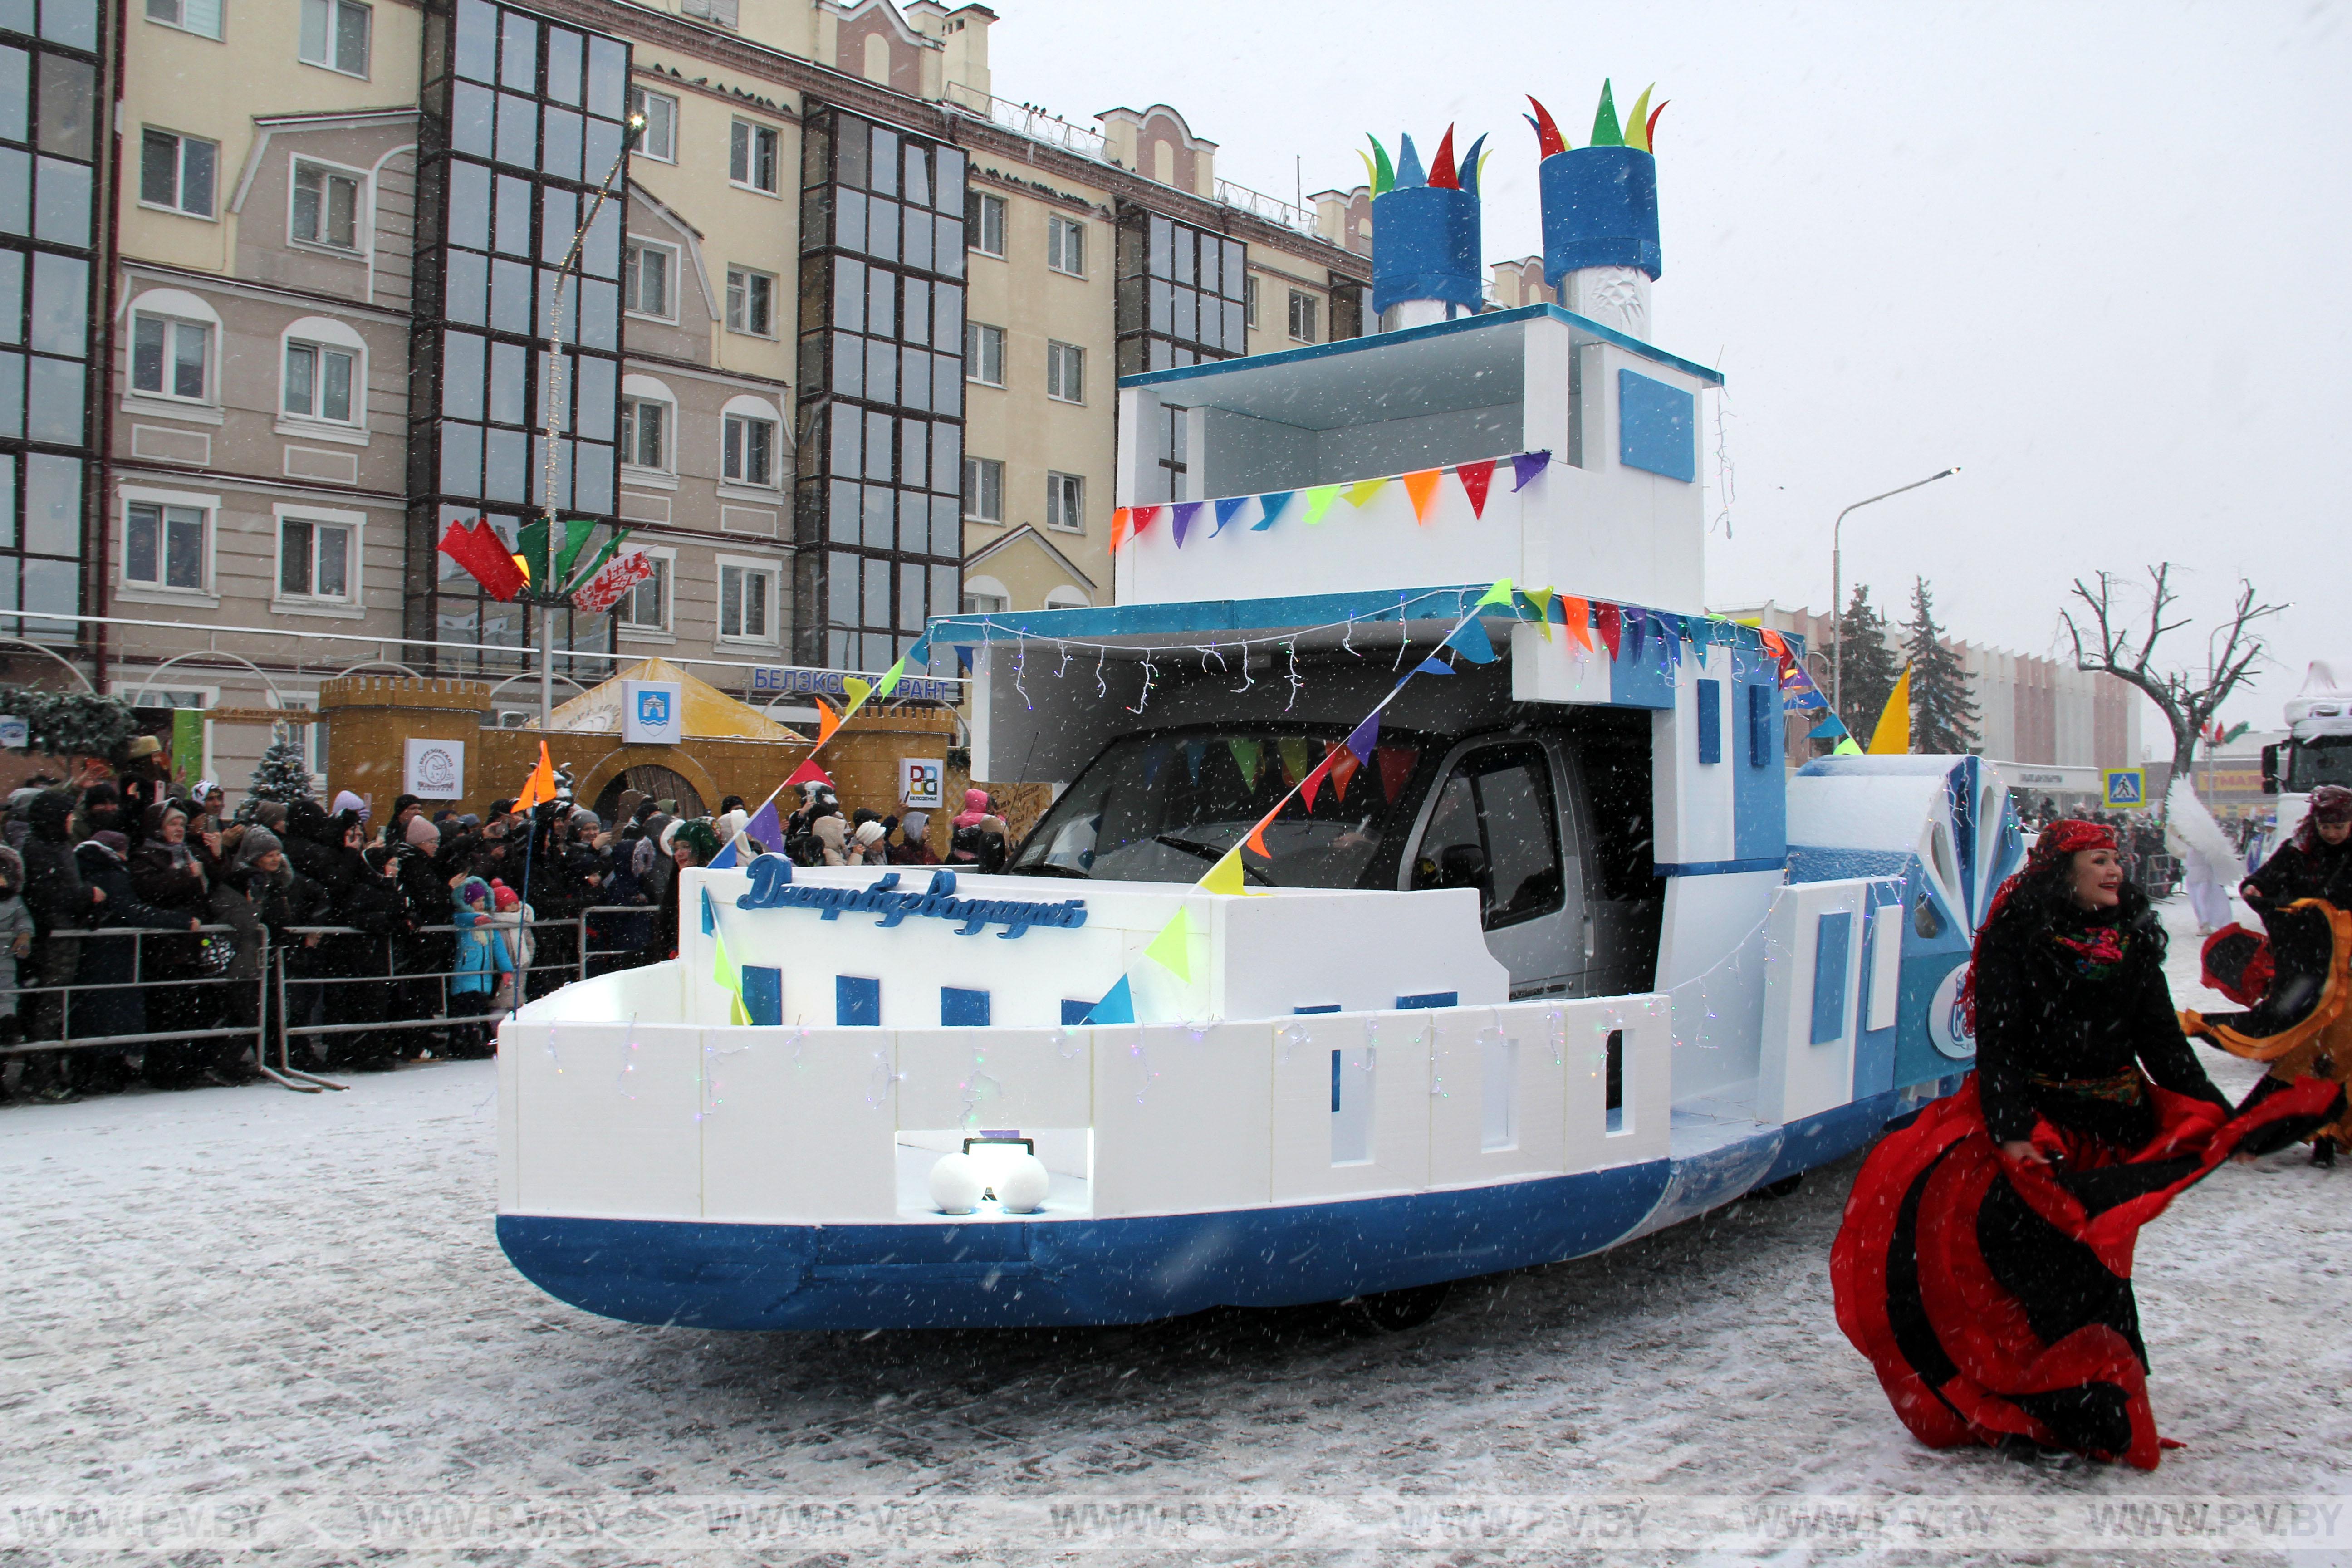 Увидели самое яркое событие областного фестиваля-ярмарки «Берестейские сани» - карнавальное шествие стилизованных автомашин и парад Дедов Морозов и Снегурочек